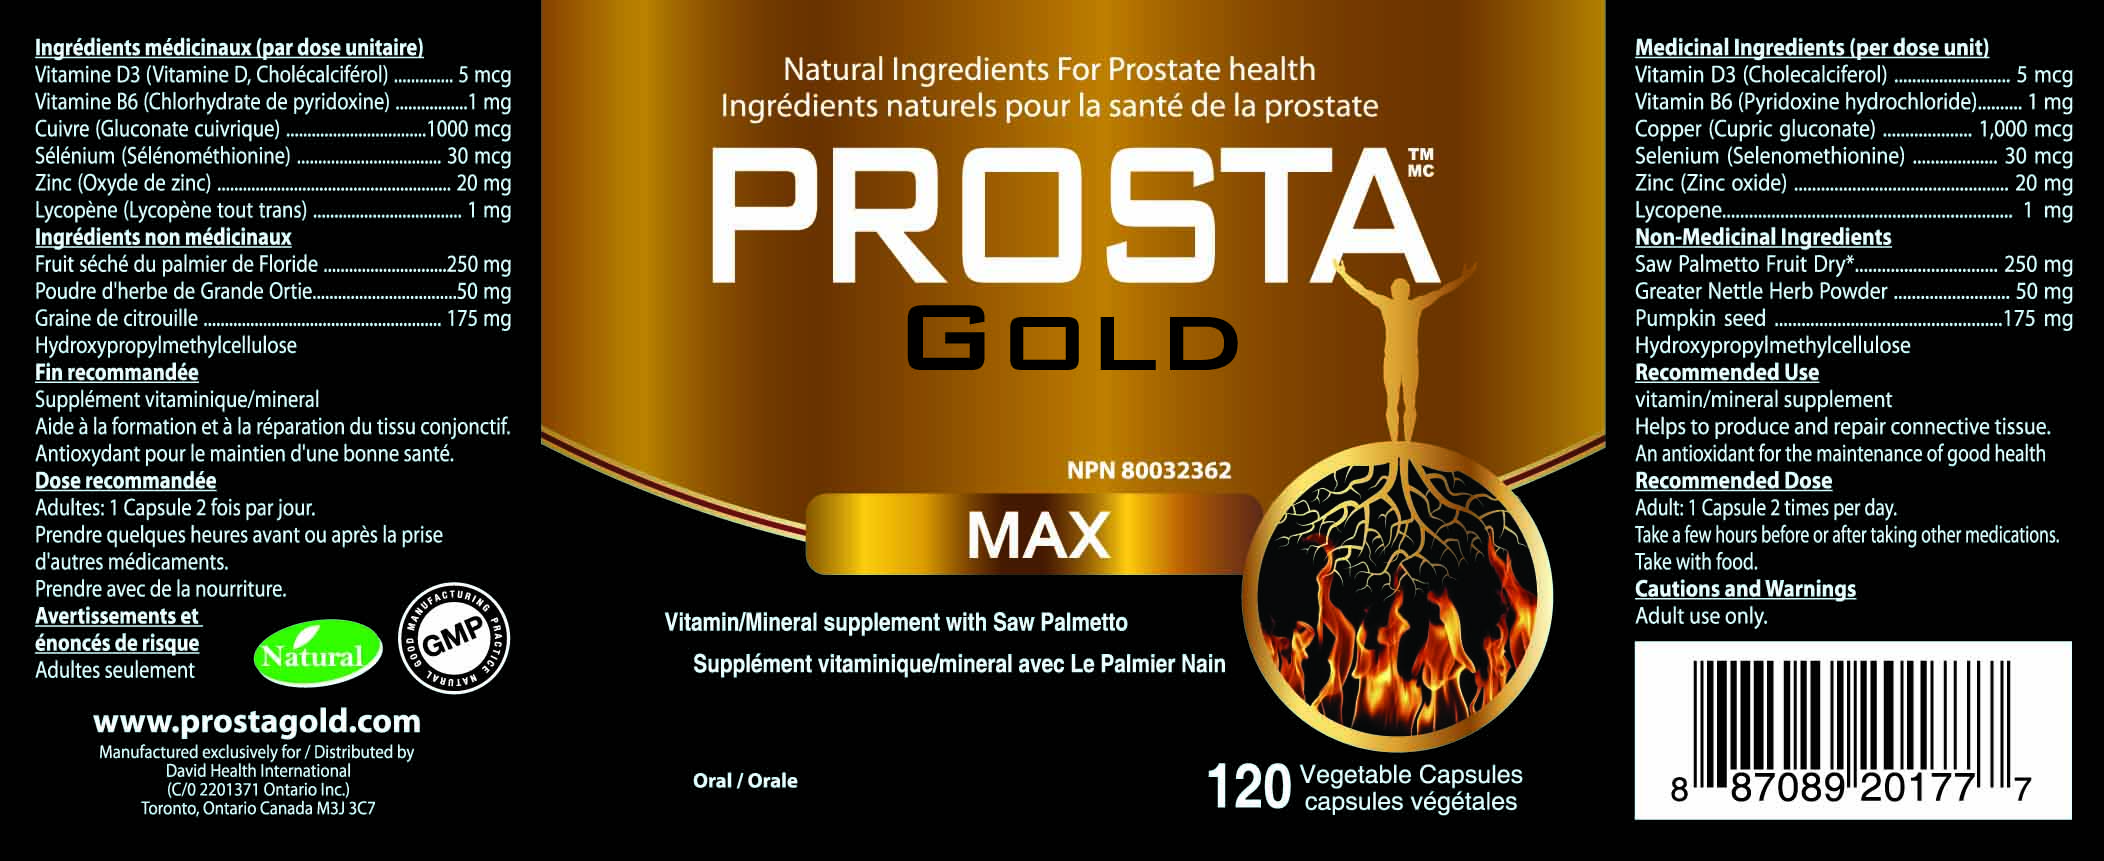 PROSTA GOLD MAX